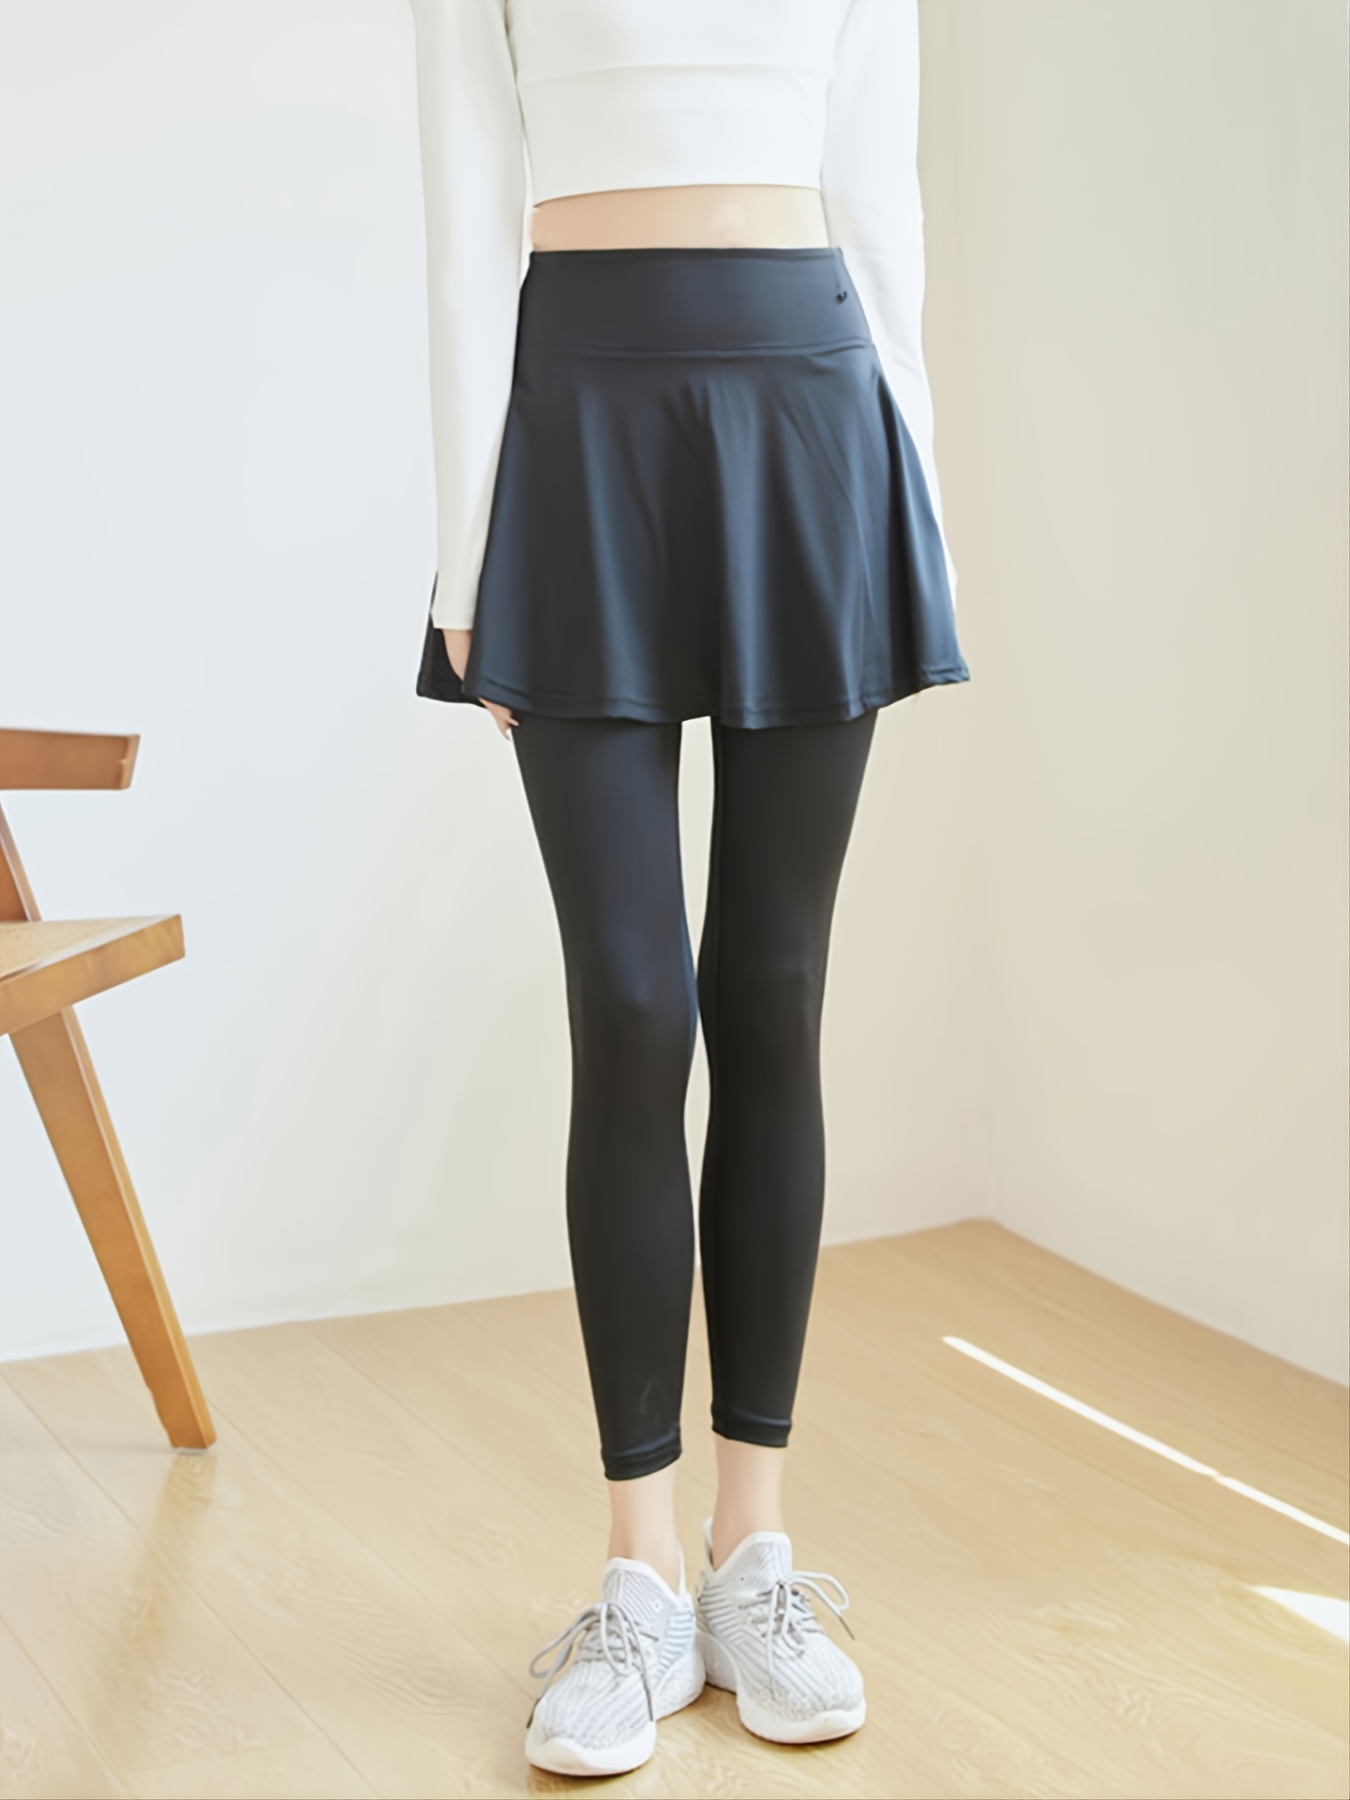 Skeggings Skirted Leggings Asymmetric Skirt Active Wear Yoga Super